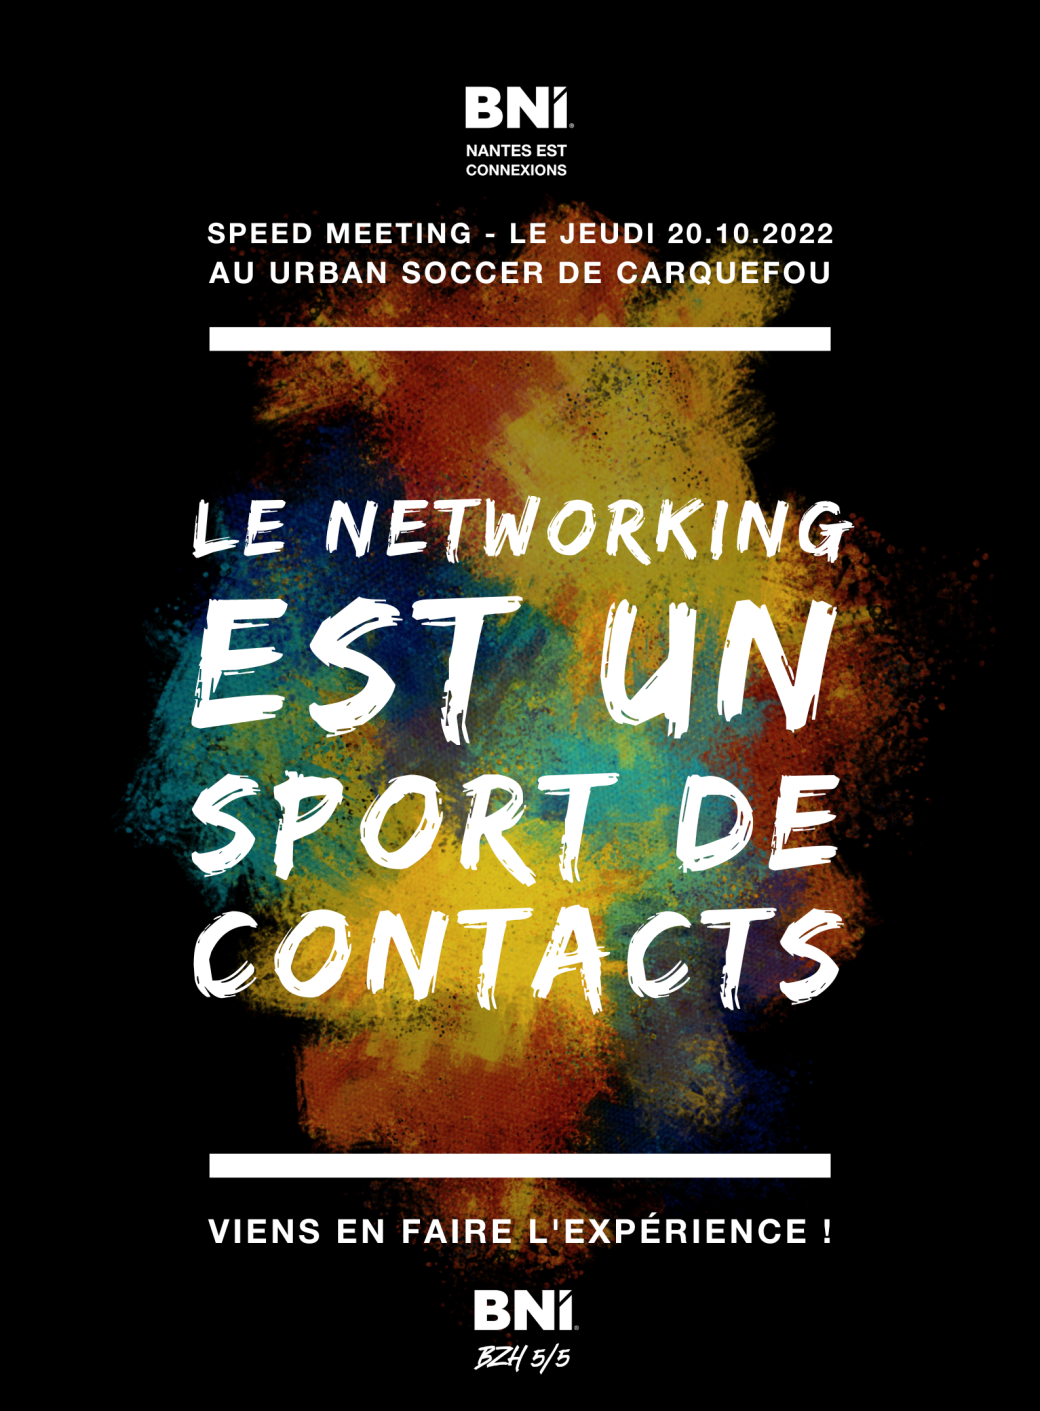 Lancement BNI Nantes Est Connexions